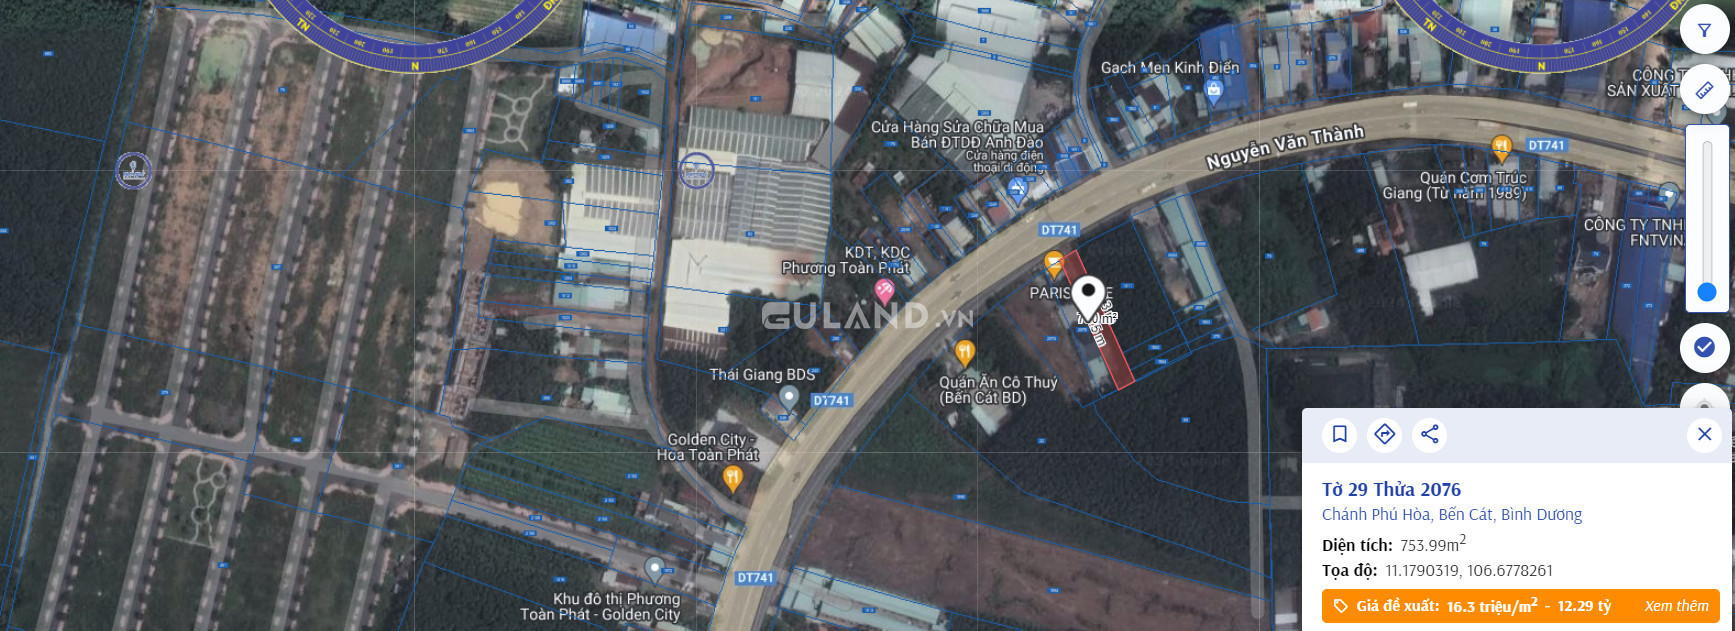 Giảm sâu: Mặt tiền 10 x 75 đường Nguyễn Văn Thành (ĐT741) chỉ còn 4 tỷ 7